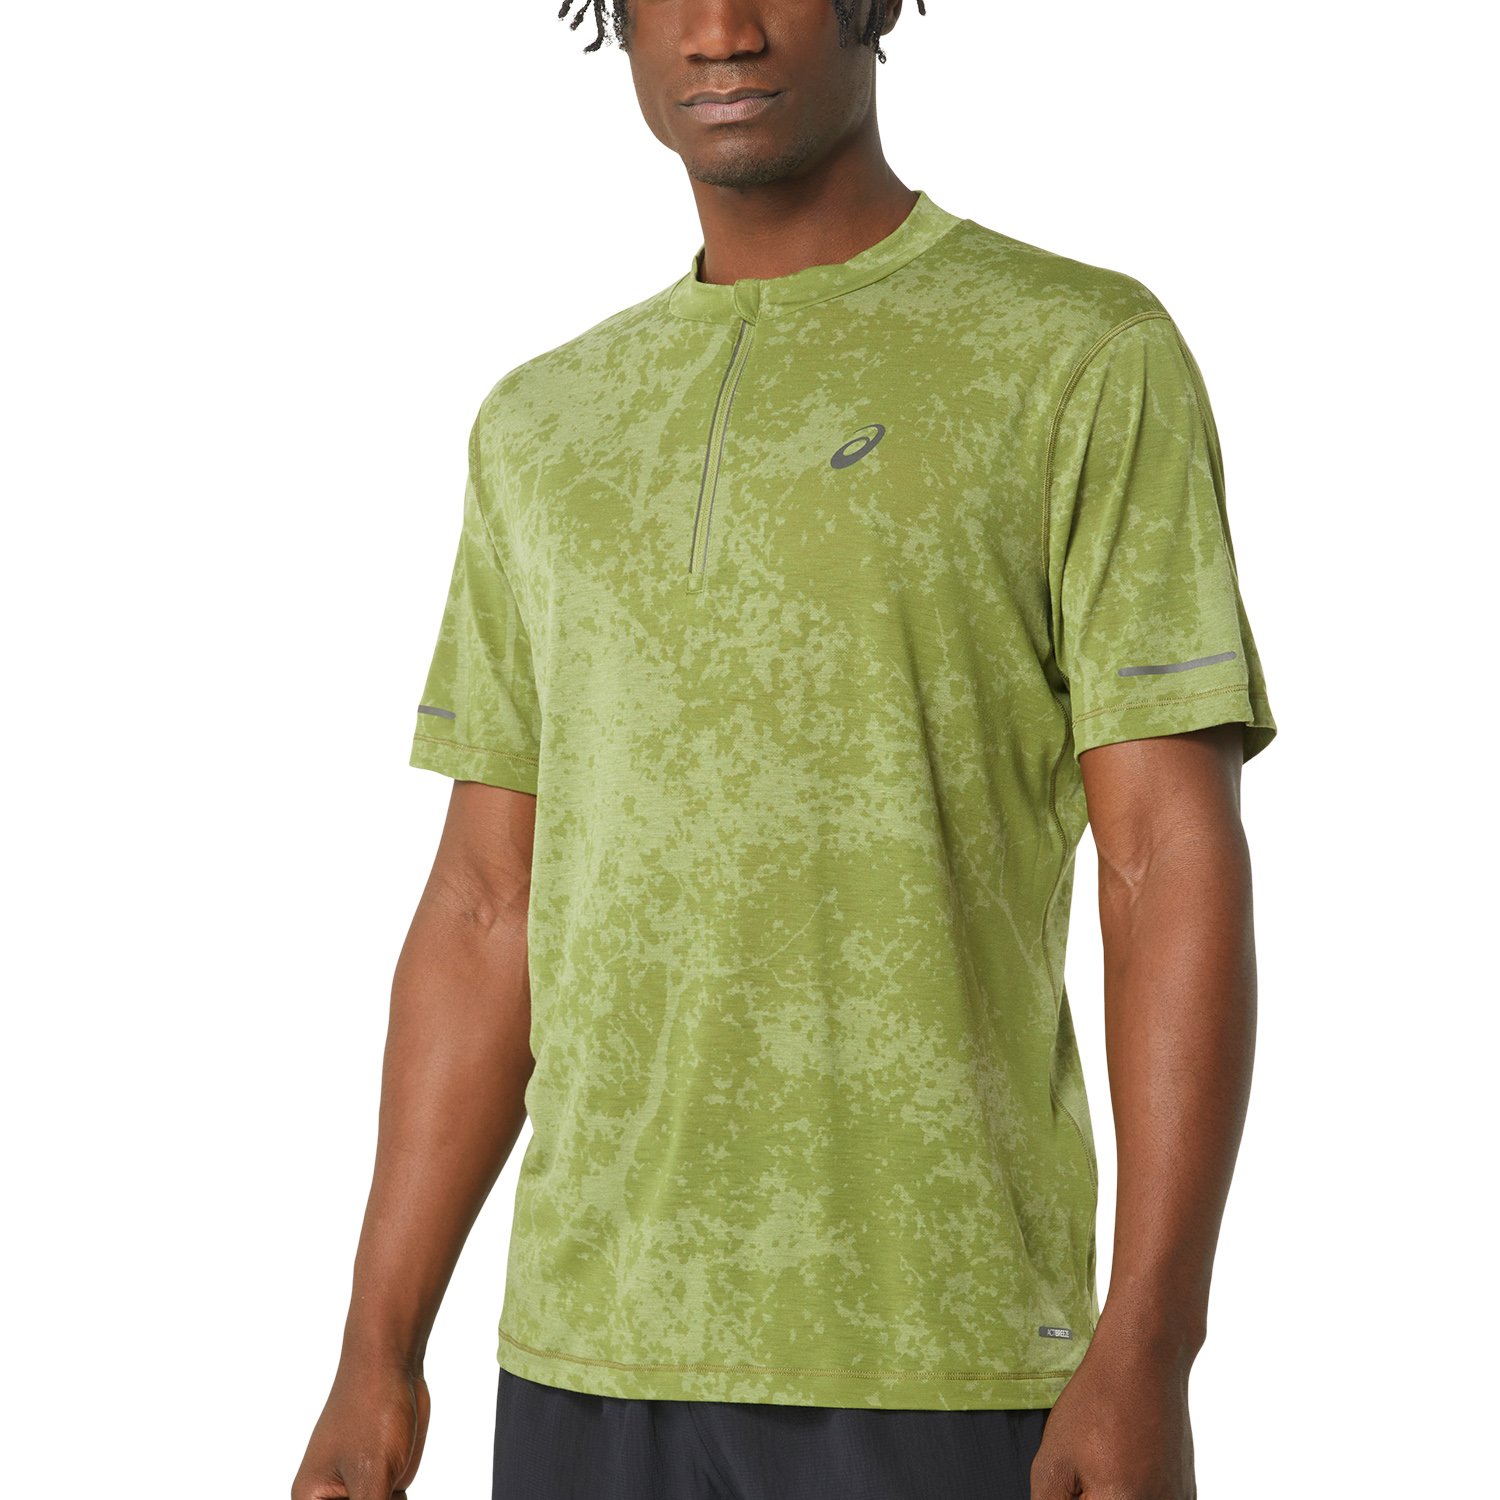 Asics Metarun T-Shirt - Cactus